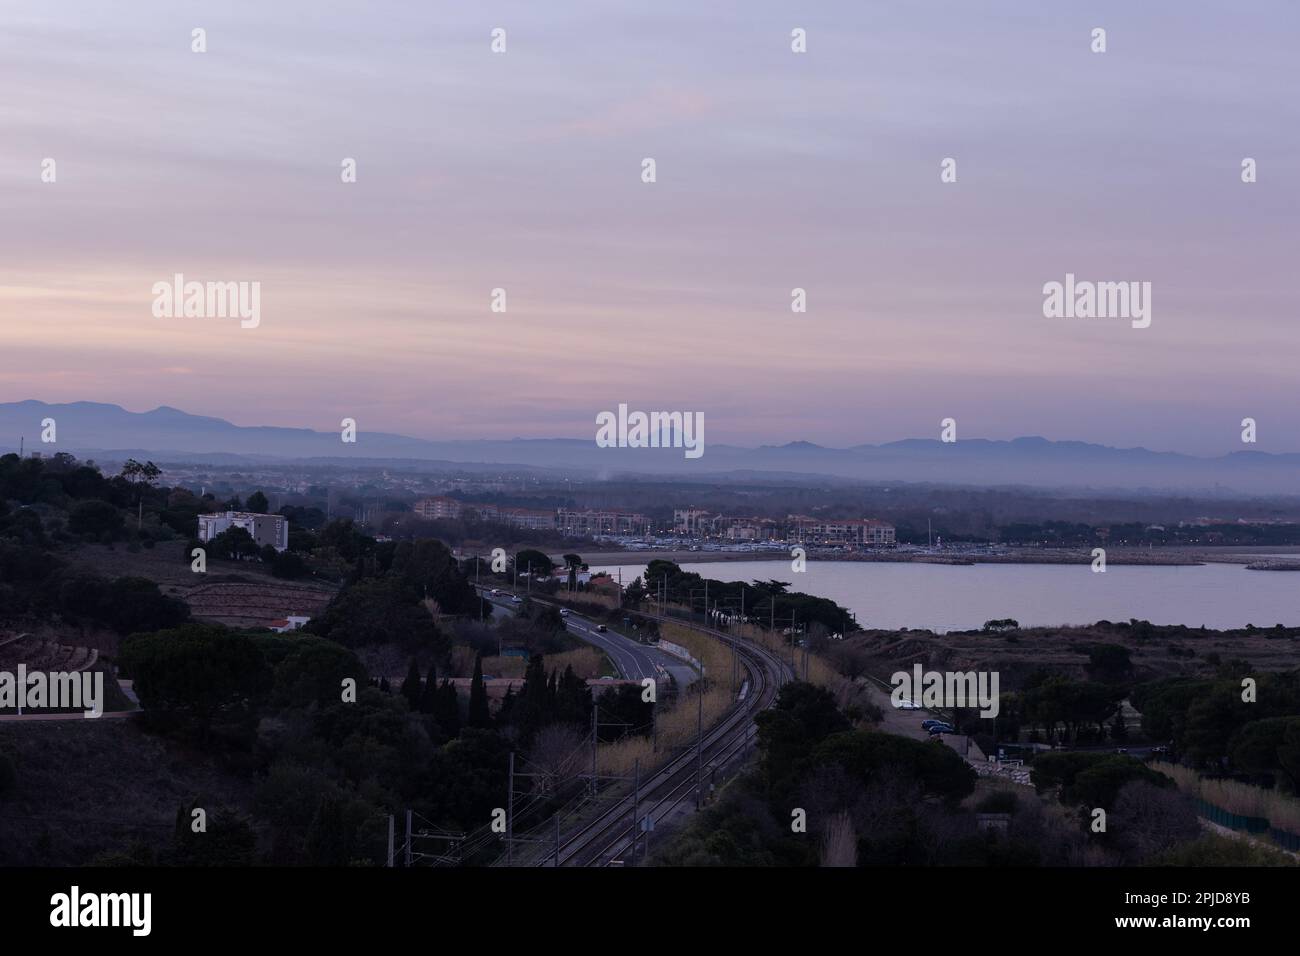 Luftbild von Collioure nach dem Sonnenuntergang in rosa und blauen Untertönen. Blick auf die Stadt mit Skyline und Mittelmeer. Stockfoto